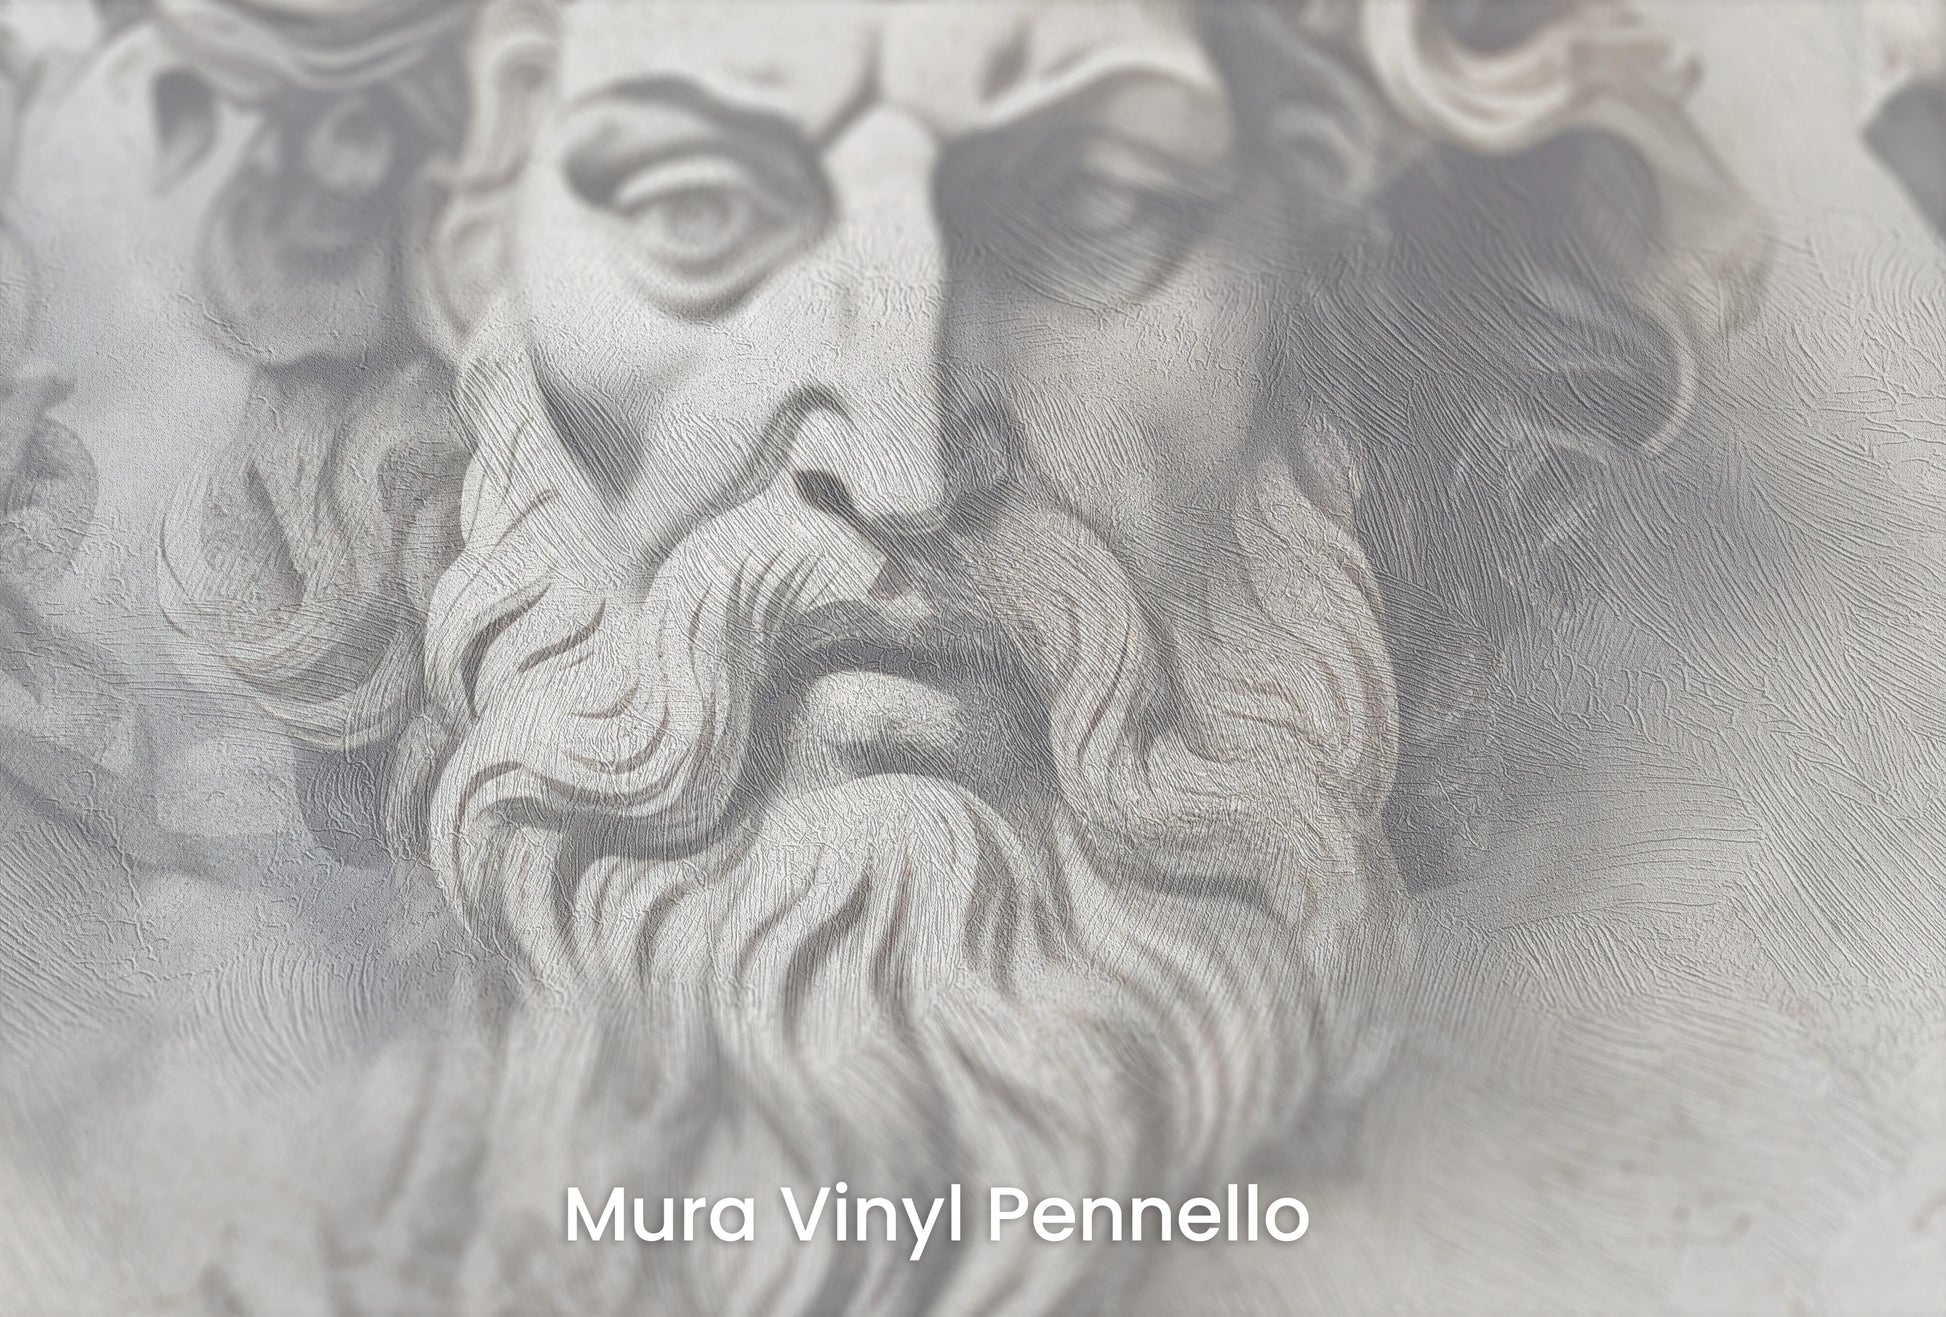 Zbliżenie na artystyczną fototapetę o nazwie Sages of Antiquity na podłożu Mura Vinyl Pennello - faktura pociągnięć pędzla malarskiego.